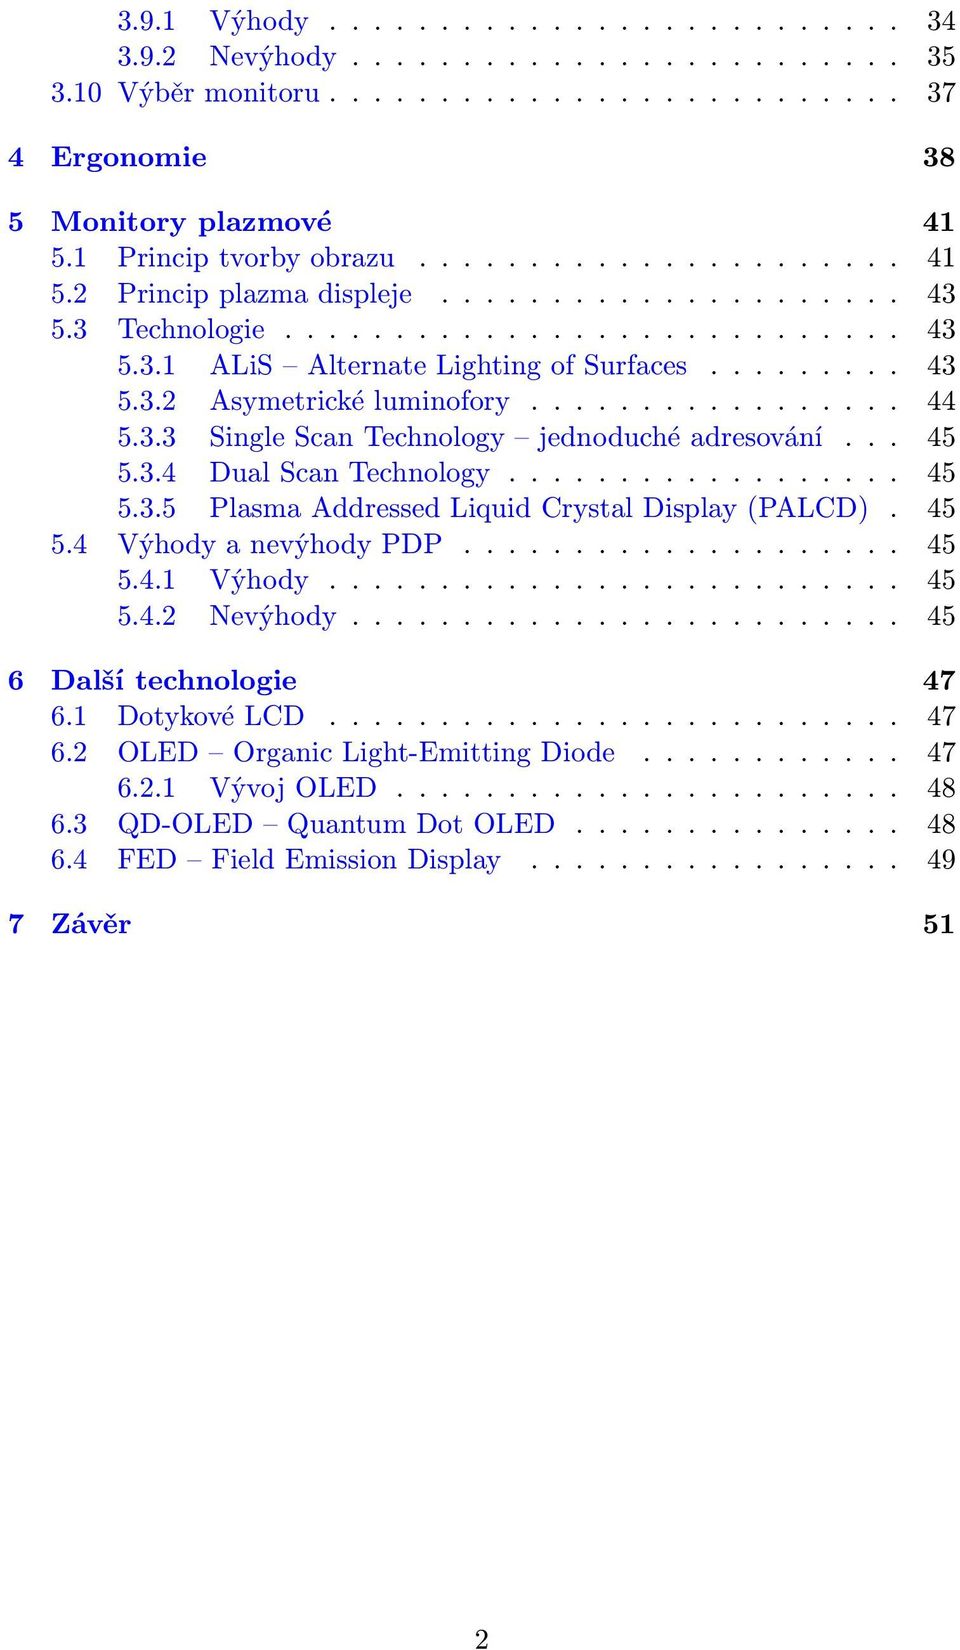 .. 45 5.3.5 Plasma Addressed Liquid Crystal Display(PALCD). 45 5.4 VýhodyanevýhodyPDP..... 45 5.4.1 Výhody... 45 5.4.2 Nevýhody... 45 6 Další technologie 47 6.